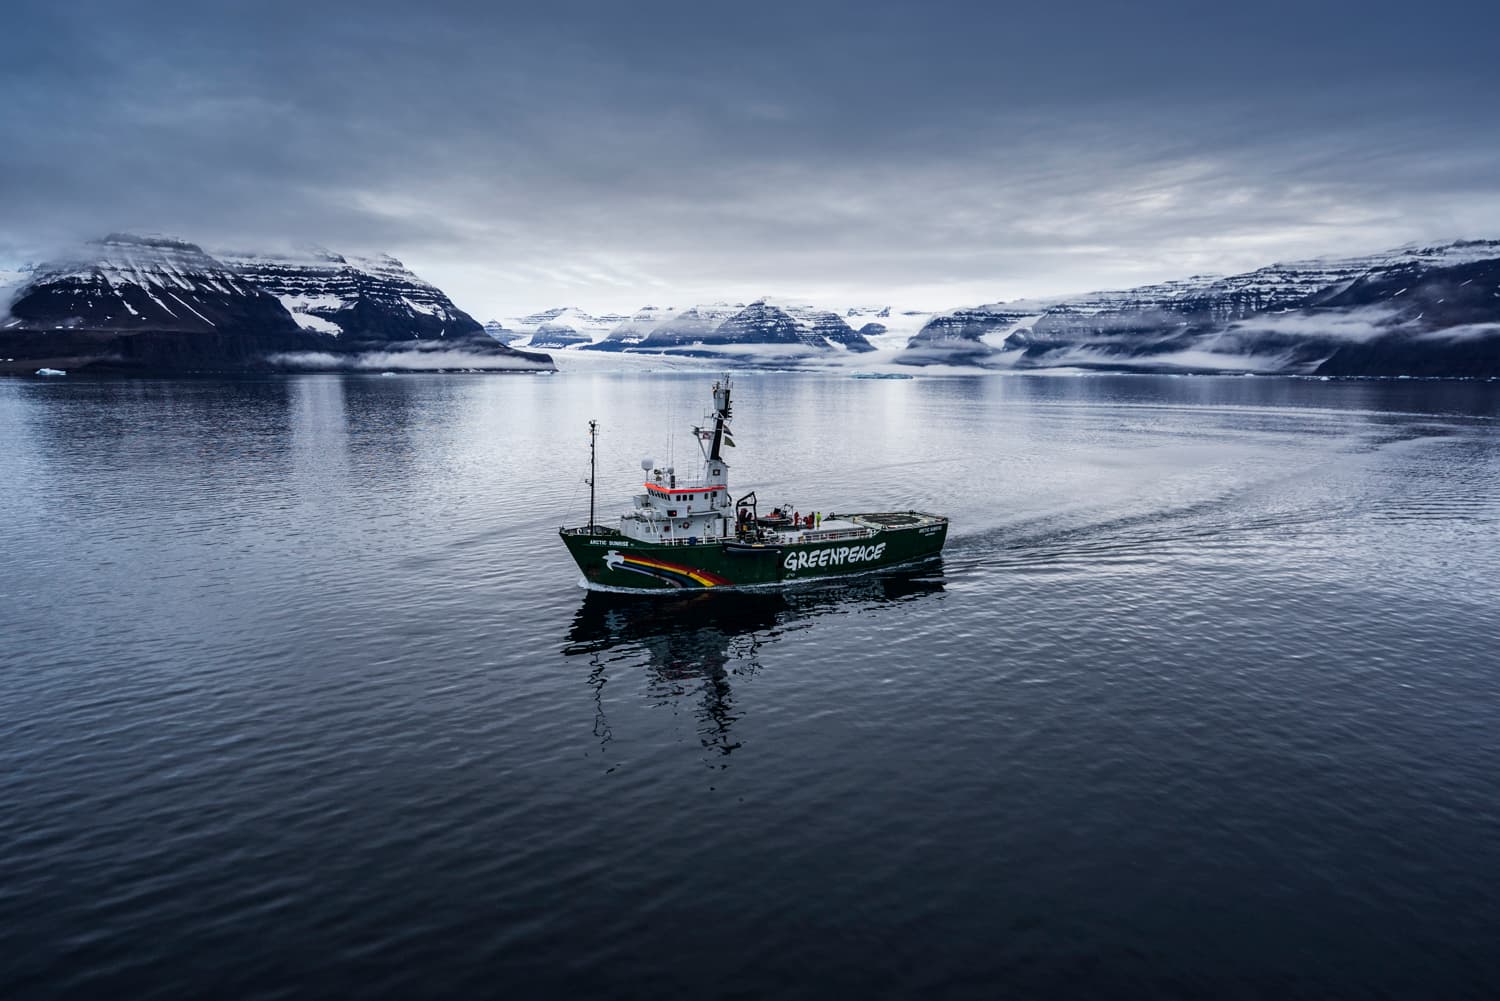 En av Greenpeace båtar i Grönland